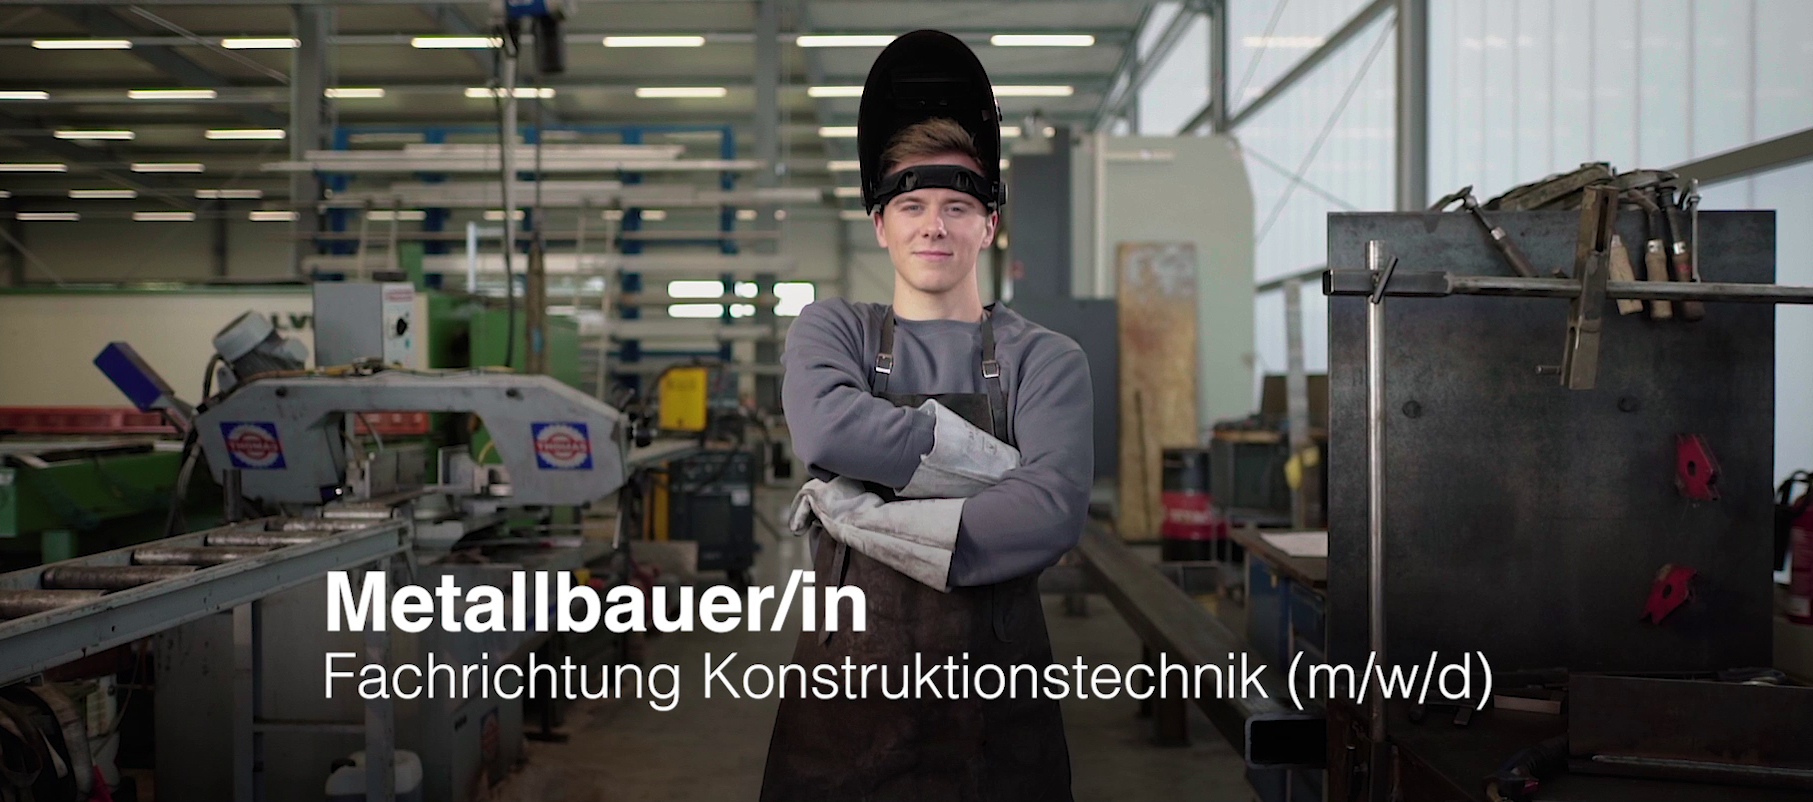 Jungermann mit verschränkten Armen im Vordergrund. Produktionshalle im Hintergrund. Aufschrift: "Metallbauer/in Fachrichtung Konstruktionstechnik (m/w/d)